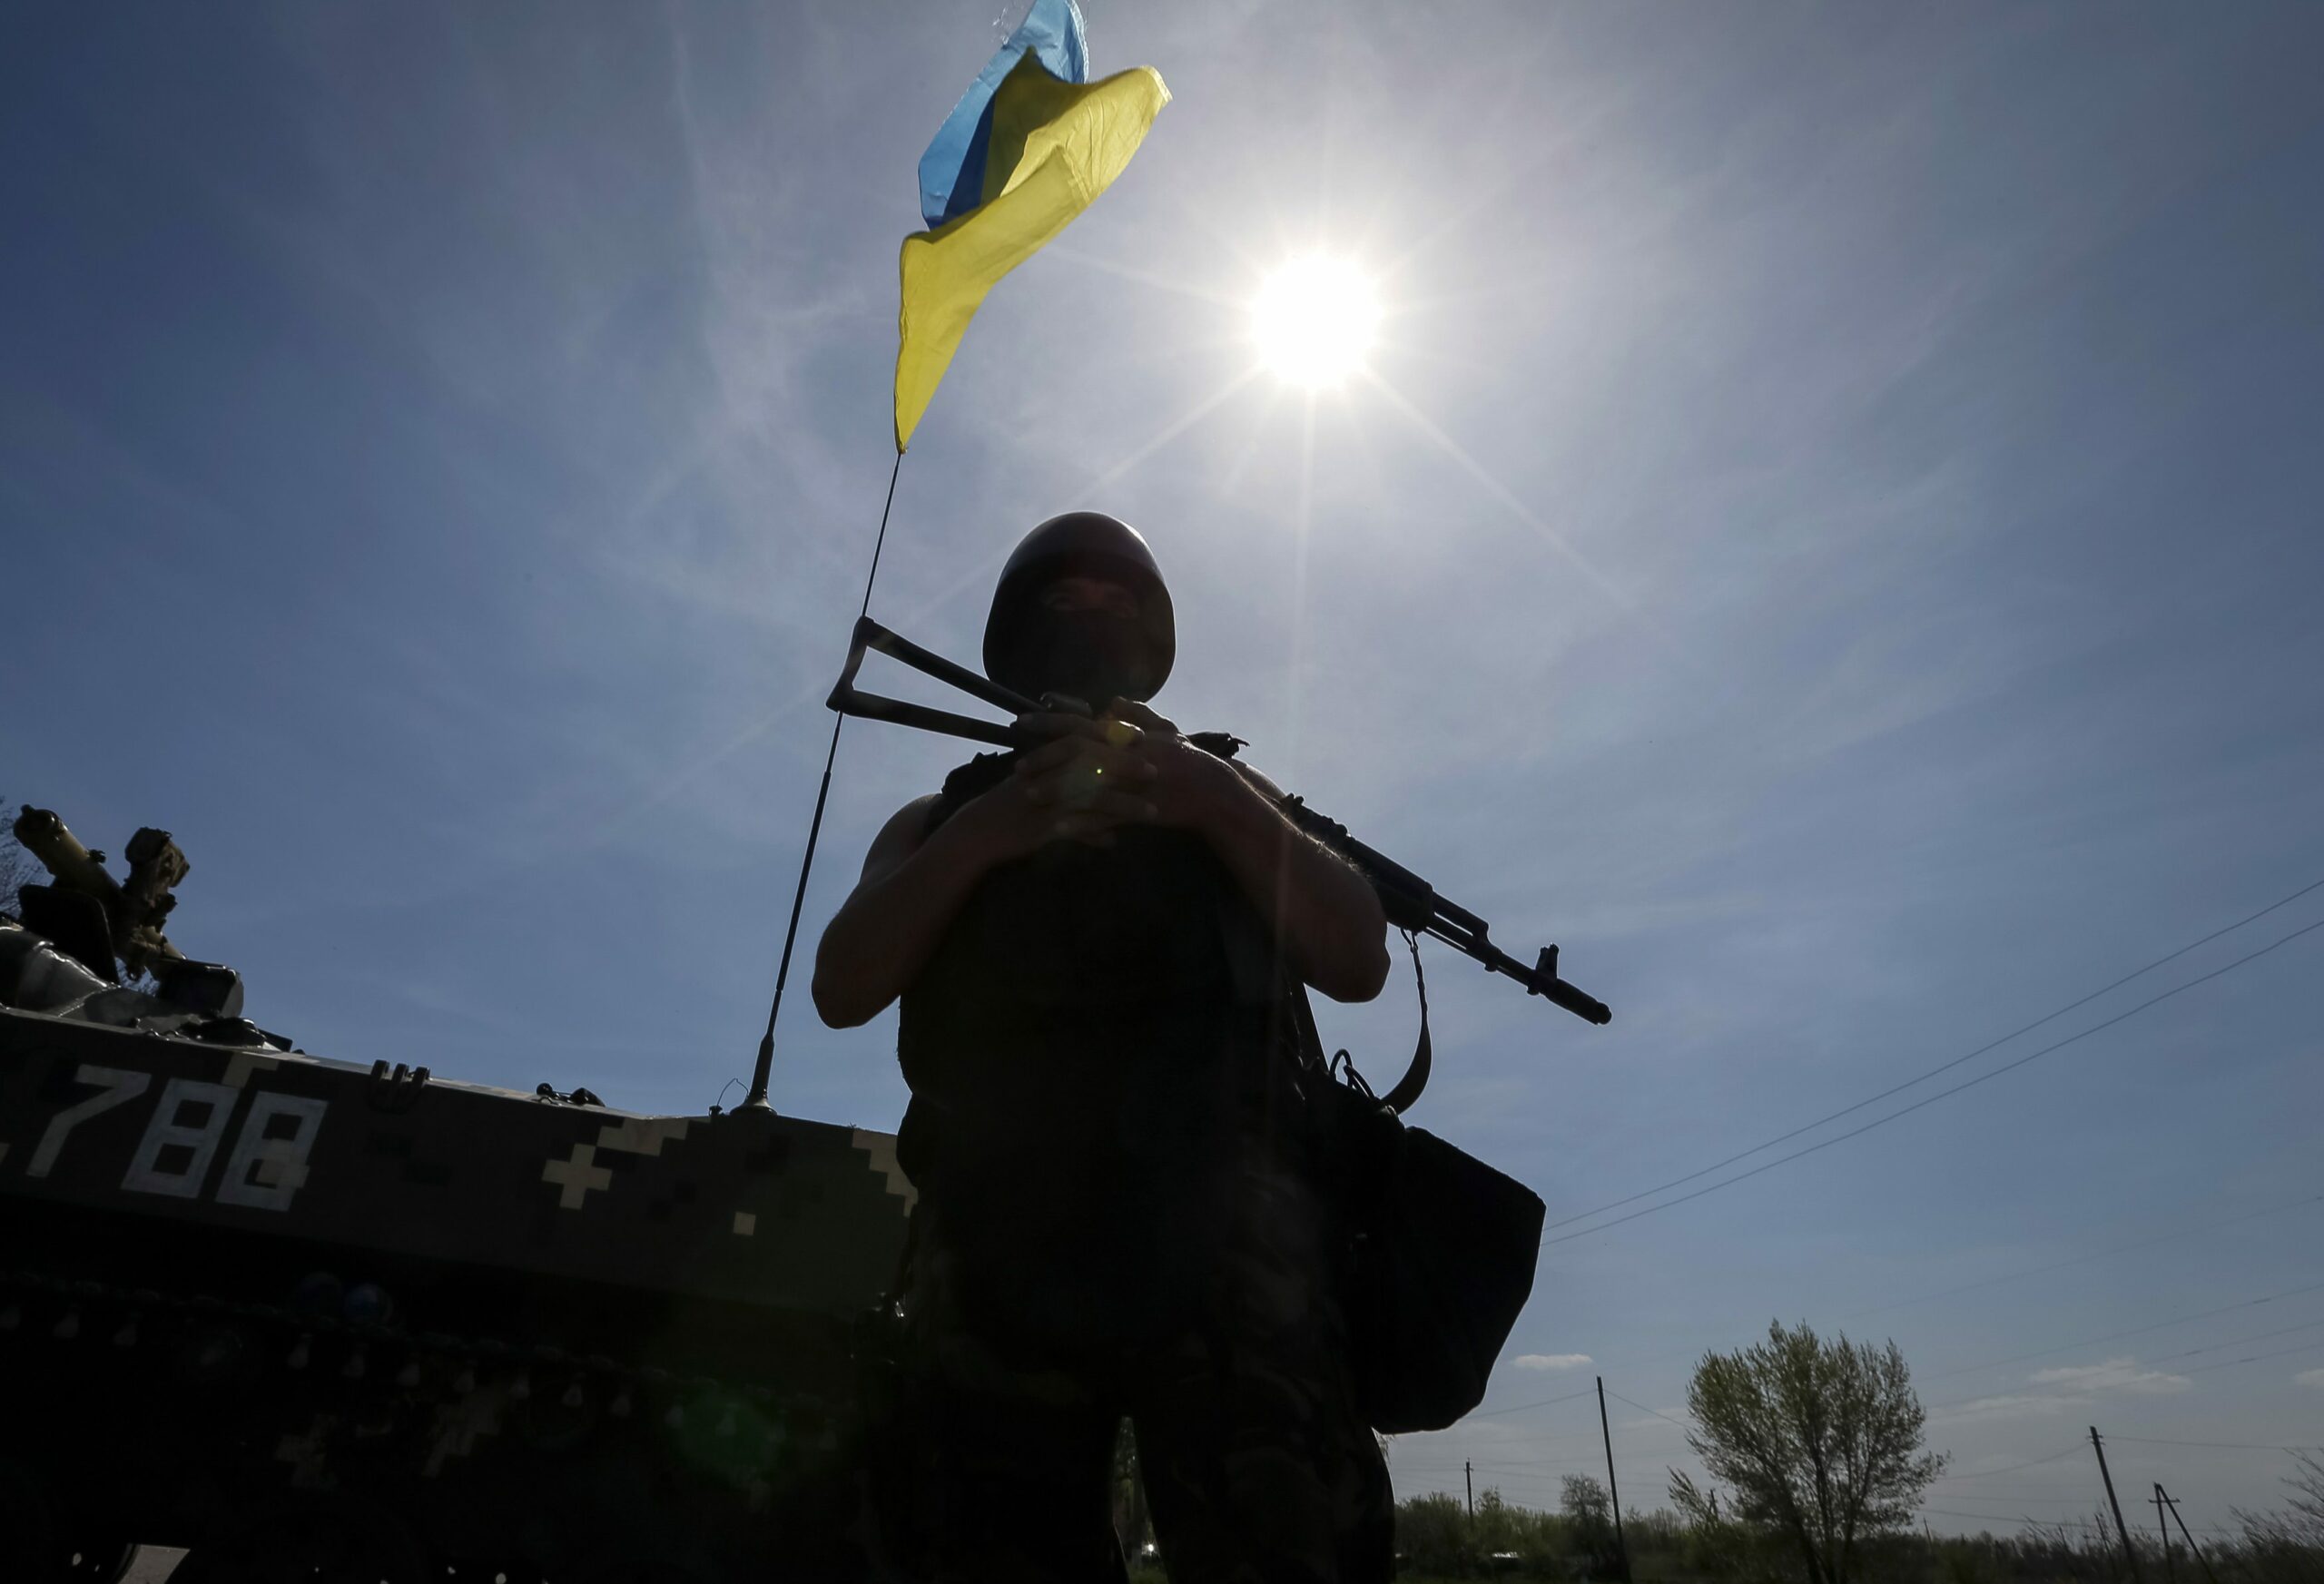 Обстрелы на Донбассе: от пули снайпера погиб военный